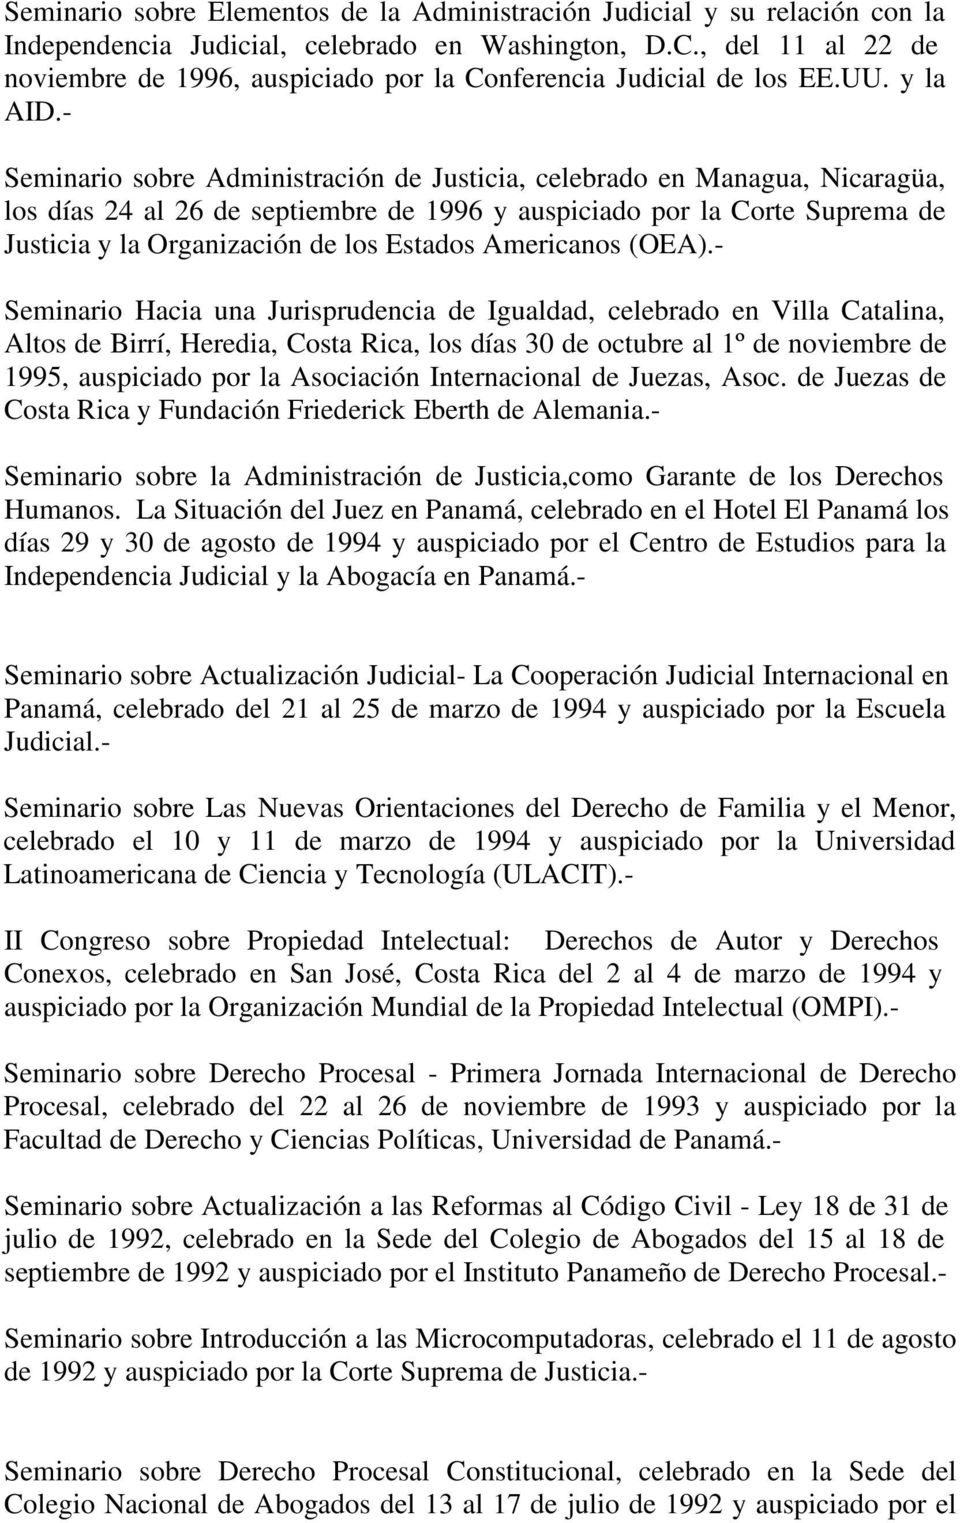 - Seminario sobre Administración de Justicia, celebrado en Managua, Nicaragüa, los días 24 al 26 de septiembre de 1996 y auspiciado por la Corte Suprema de Justicia y la Organización de los Estados